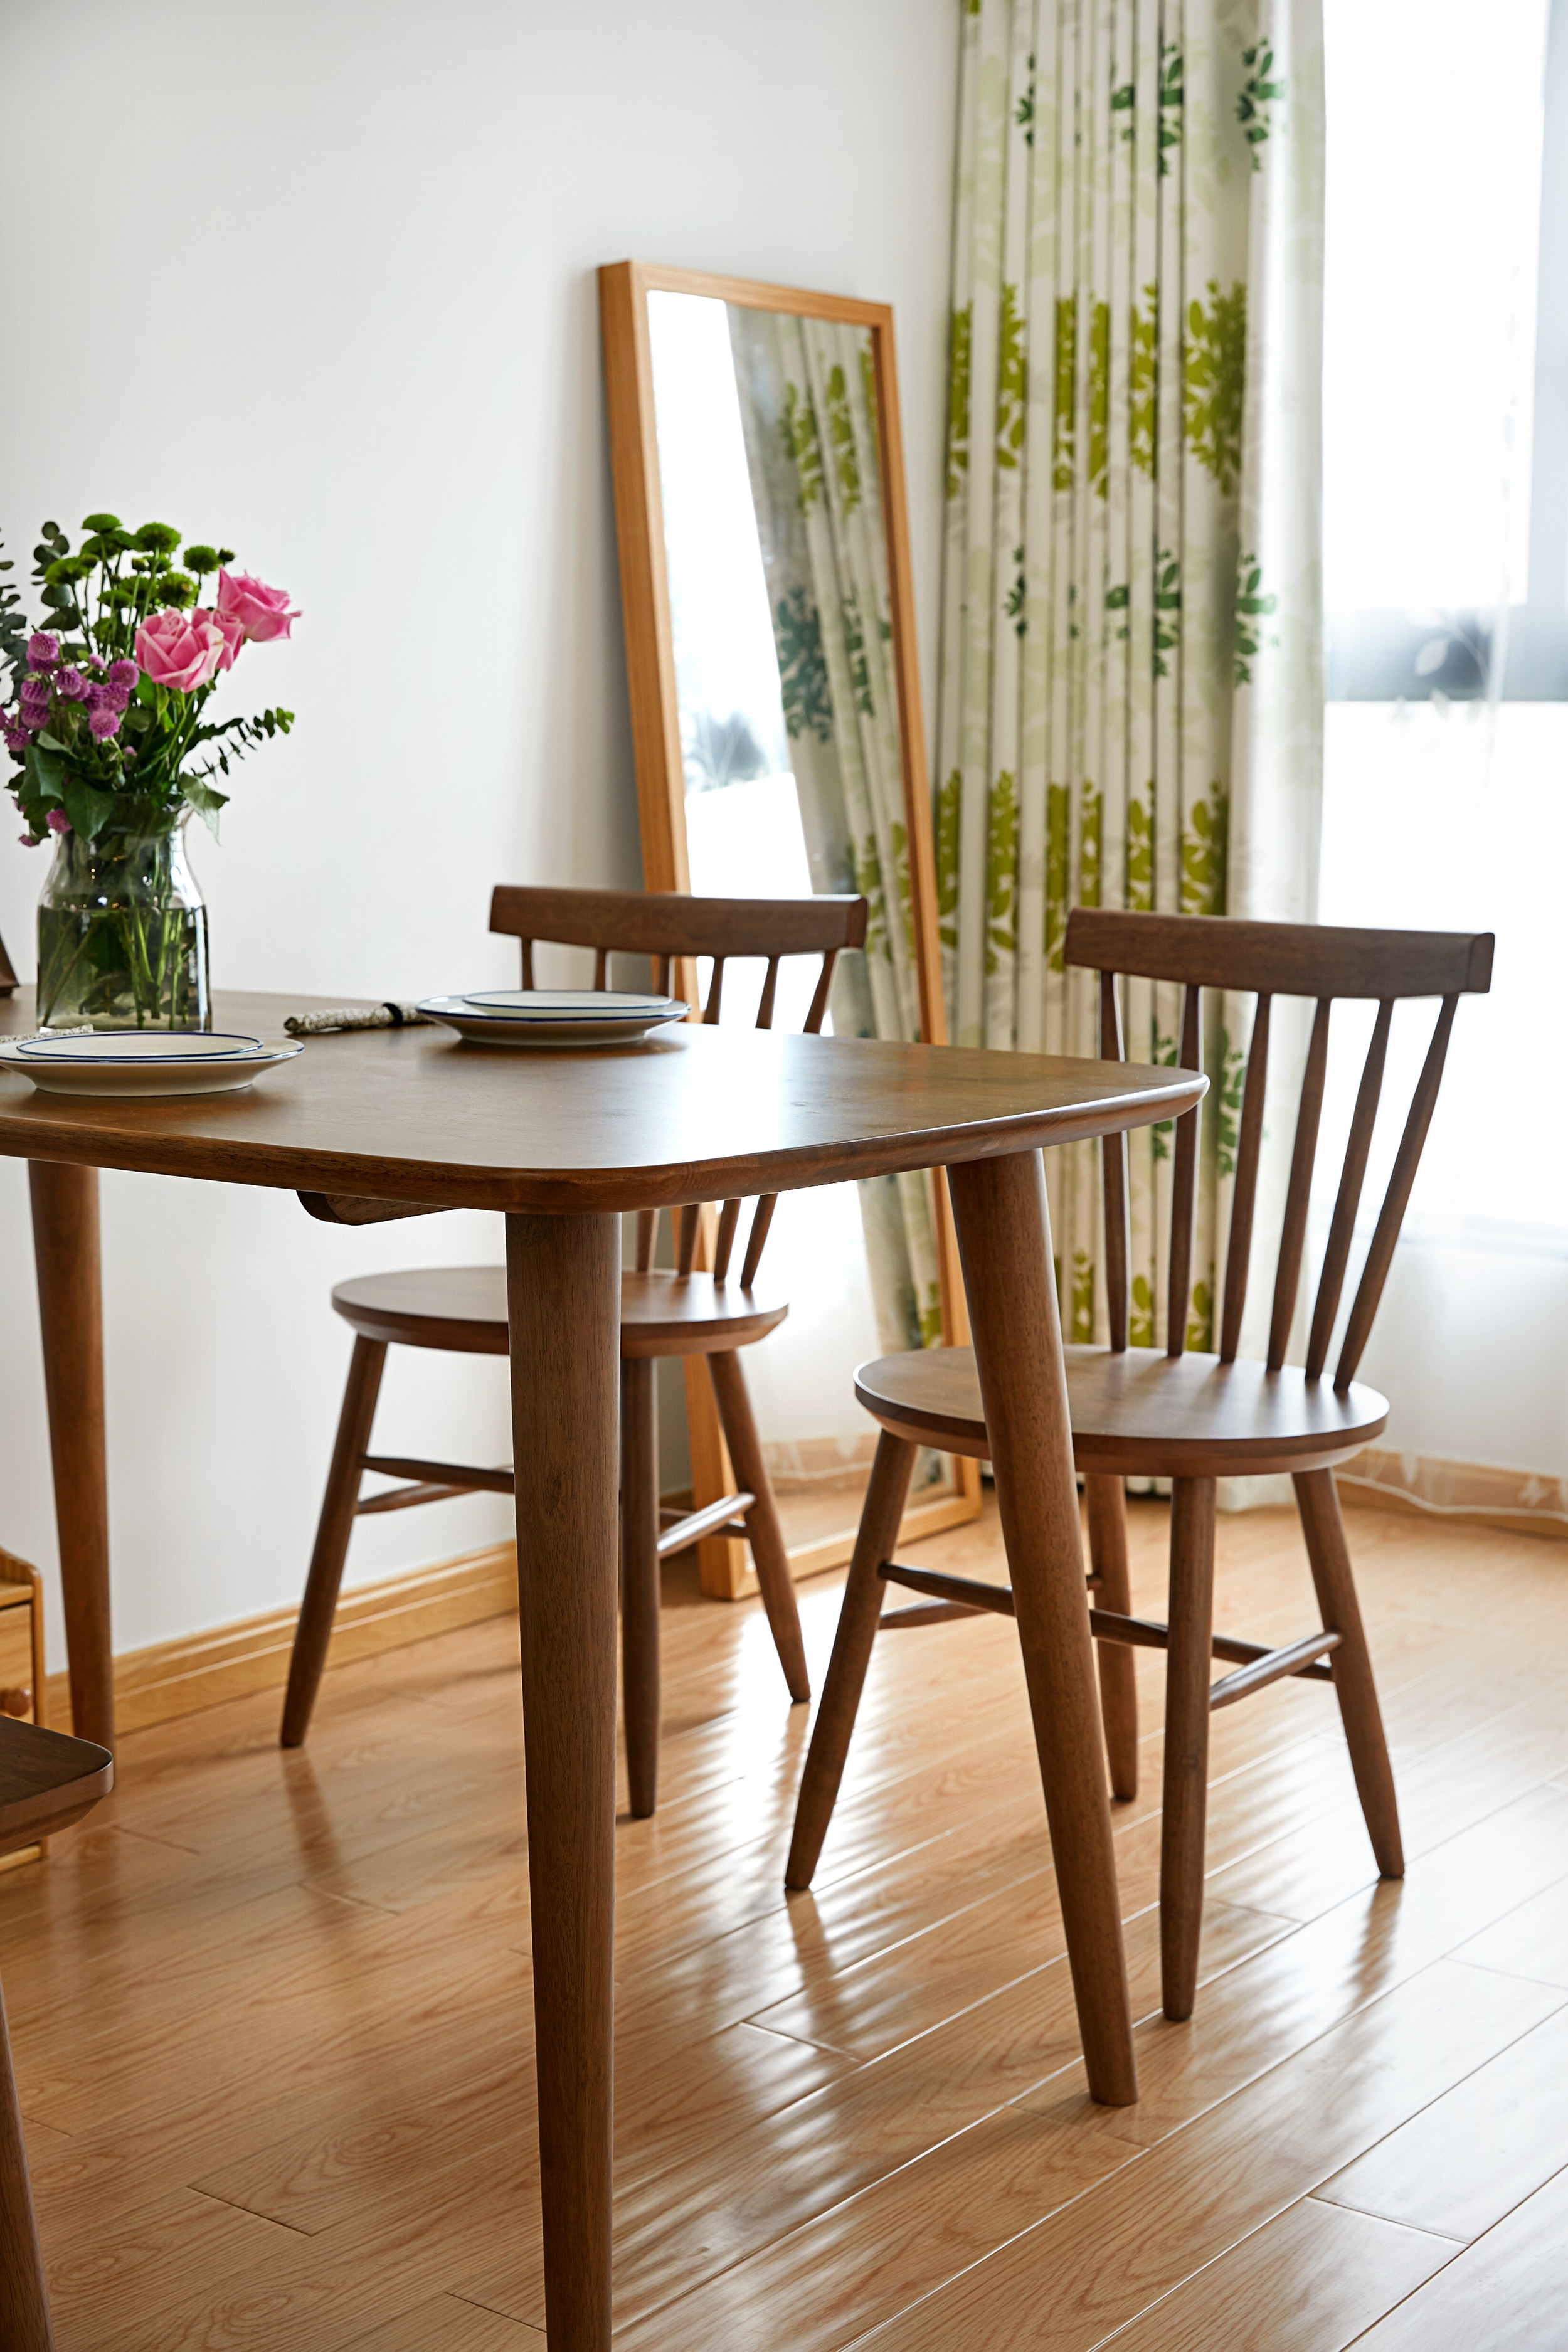 85㎡日式风格家餐桌椅图片